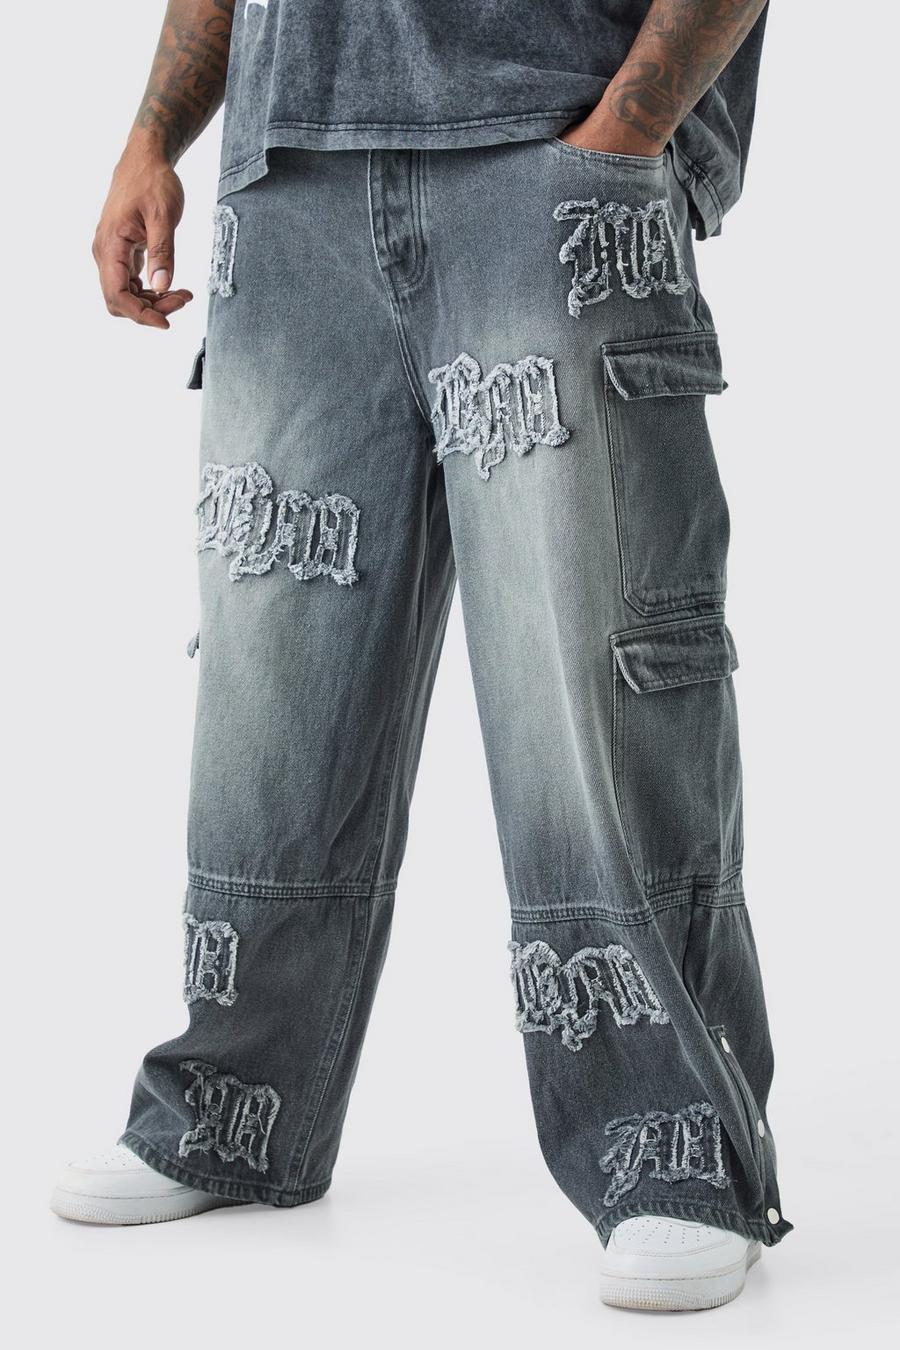 Jeans Plus Size extra comodi in denim rigido con applique BM e tasche Cargo, Grey